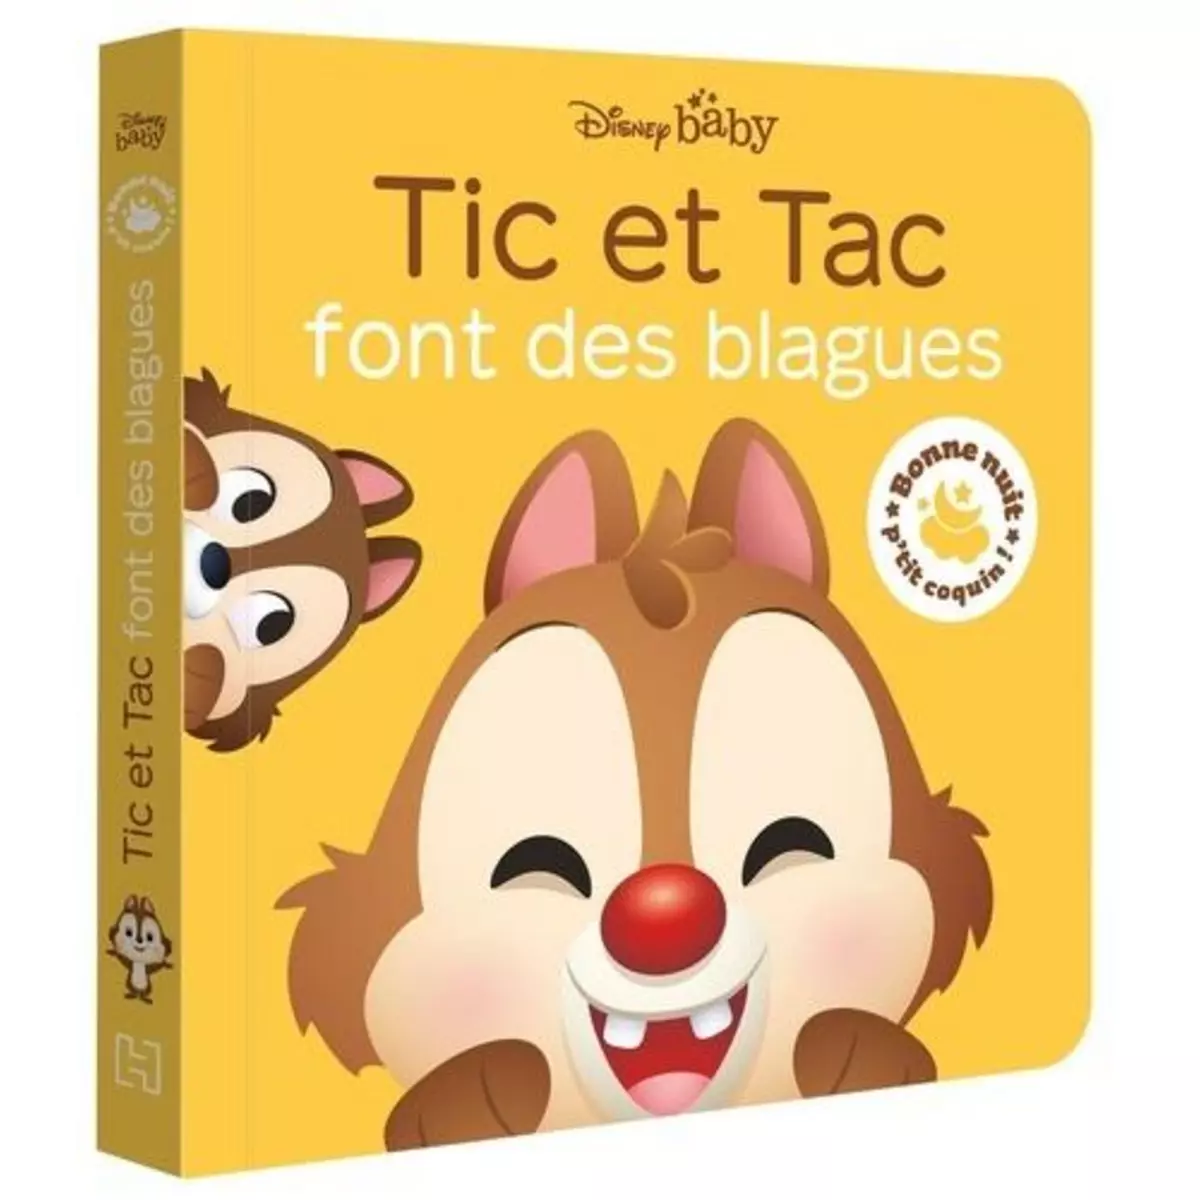  TIC ET TAC FONT DES BLAGUES, Disney Baby